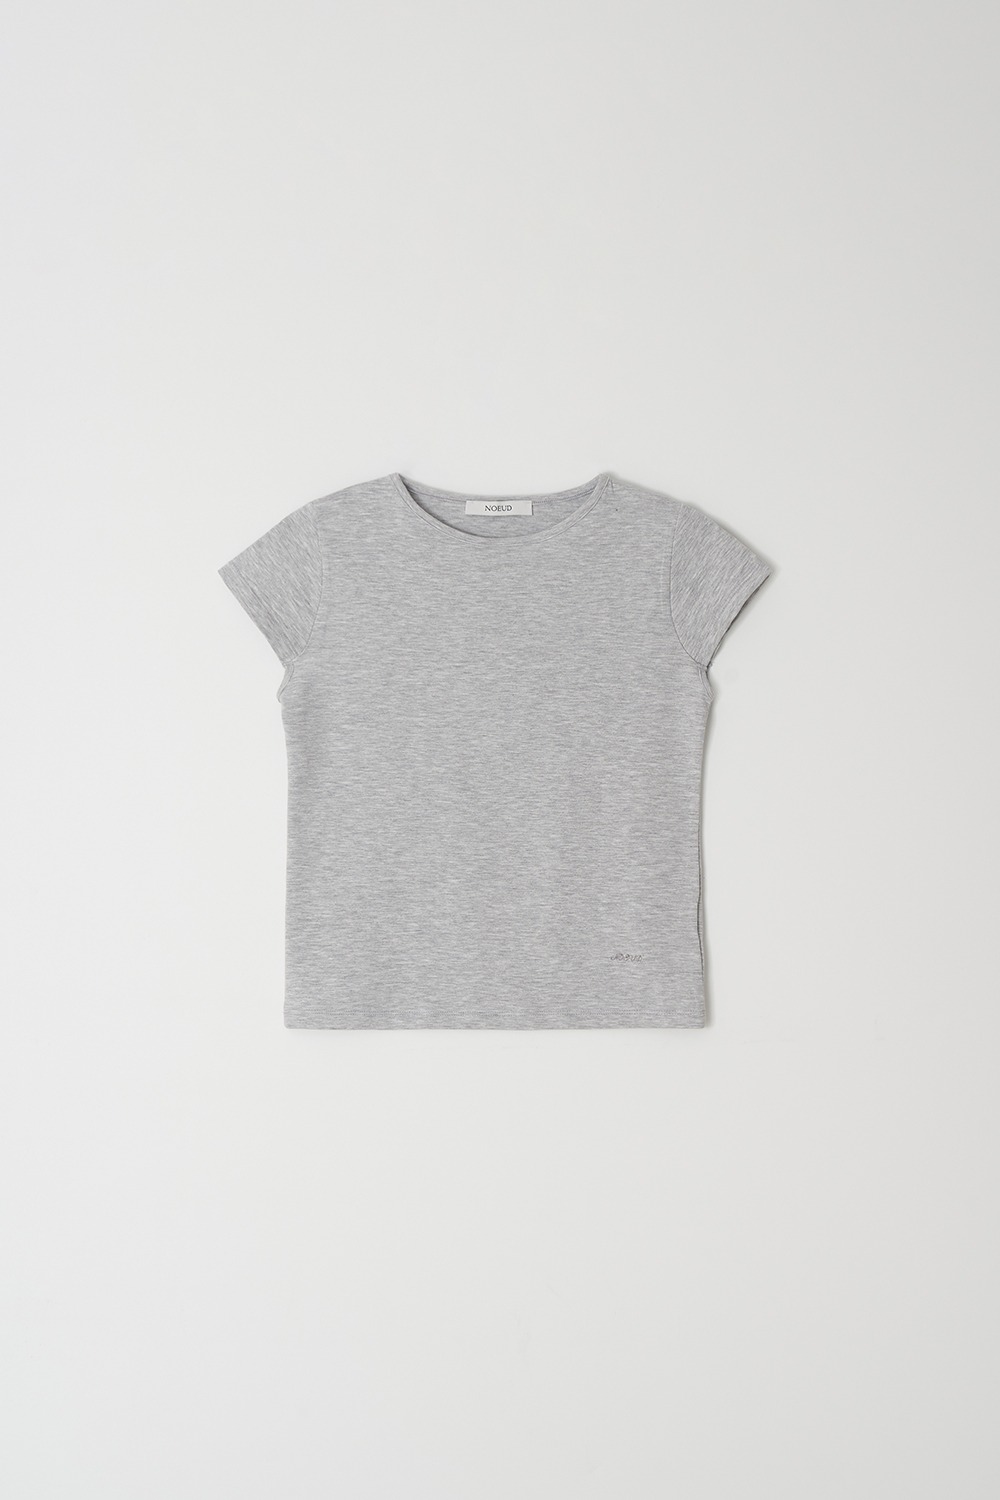 Geek cap sleeve T-shirt (Gray)